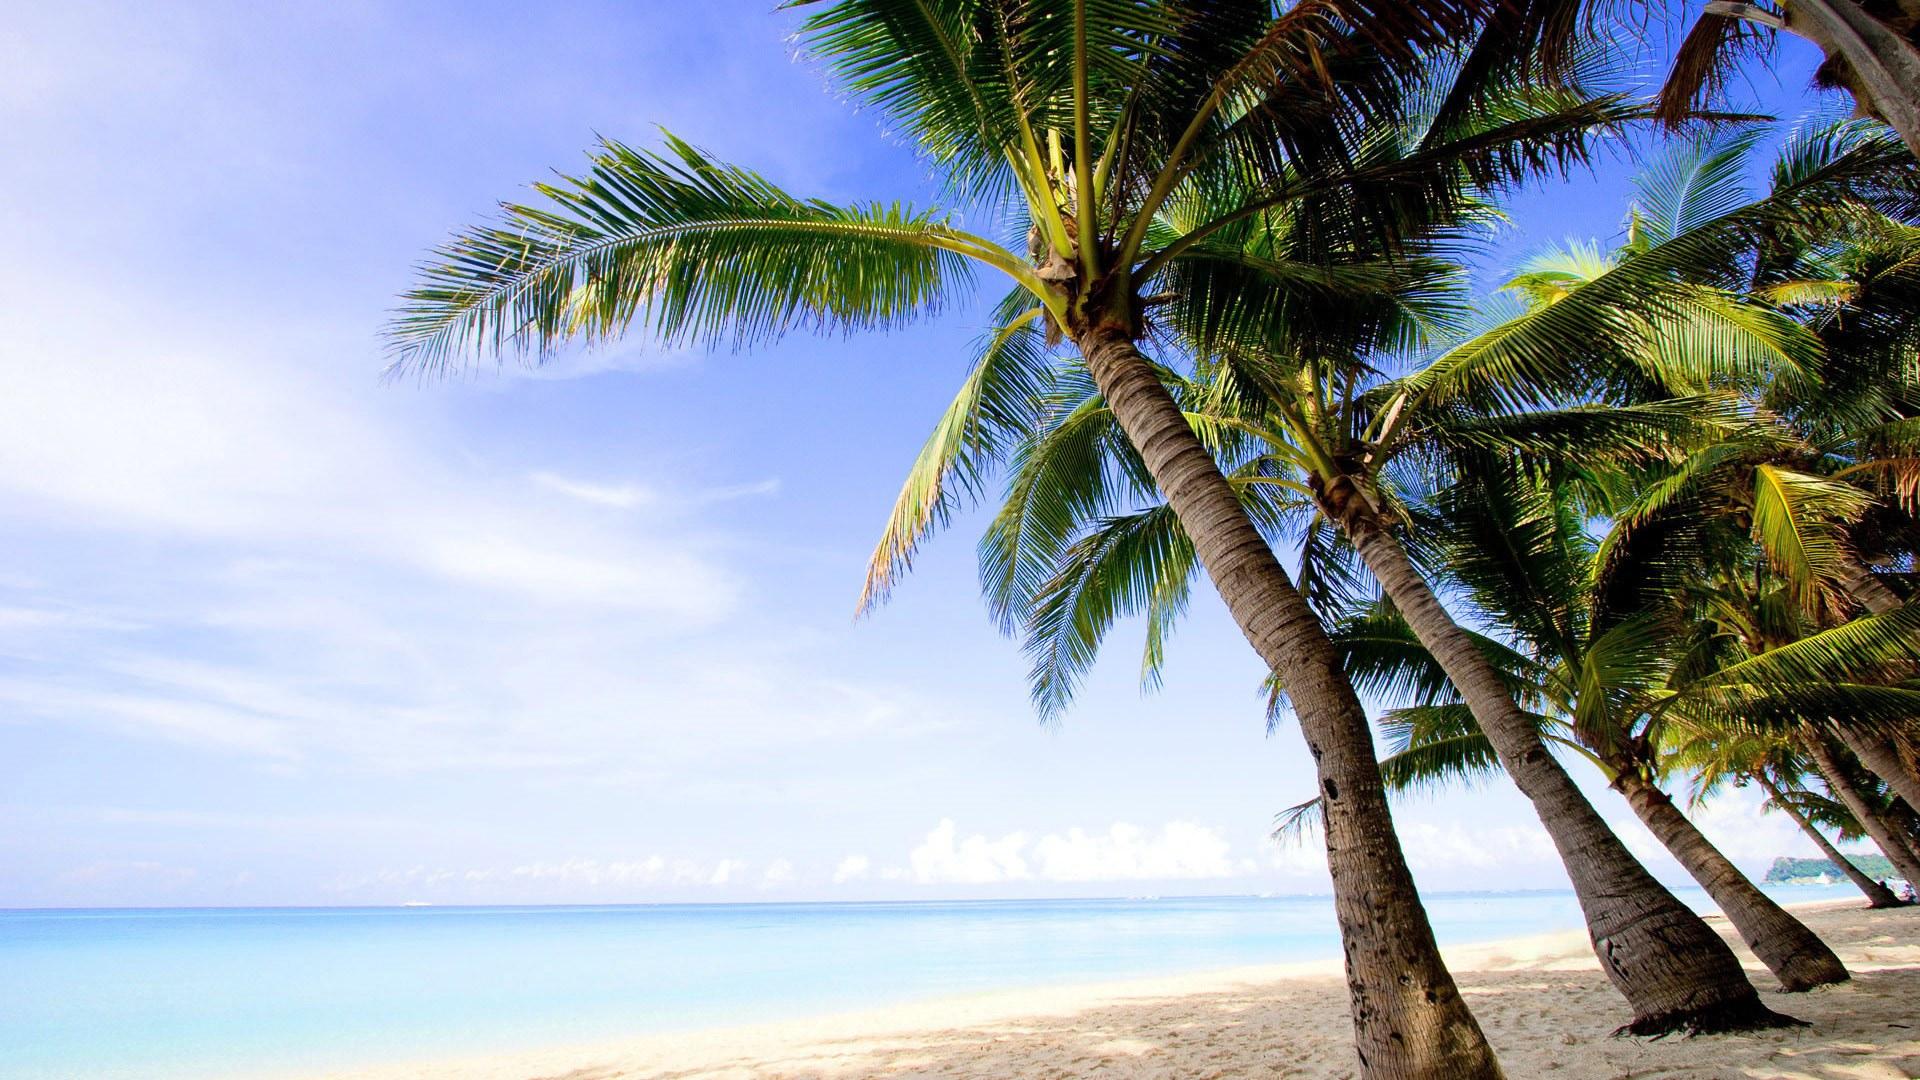 夏日海边椰子树风光美景桌面壁纸_椰子树壁纸图片_三千图片网